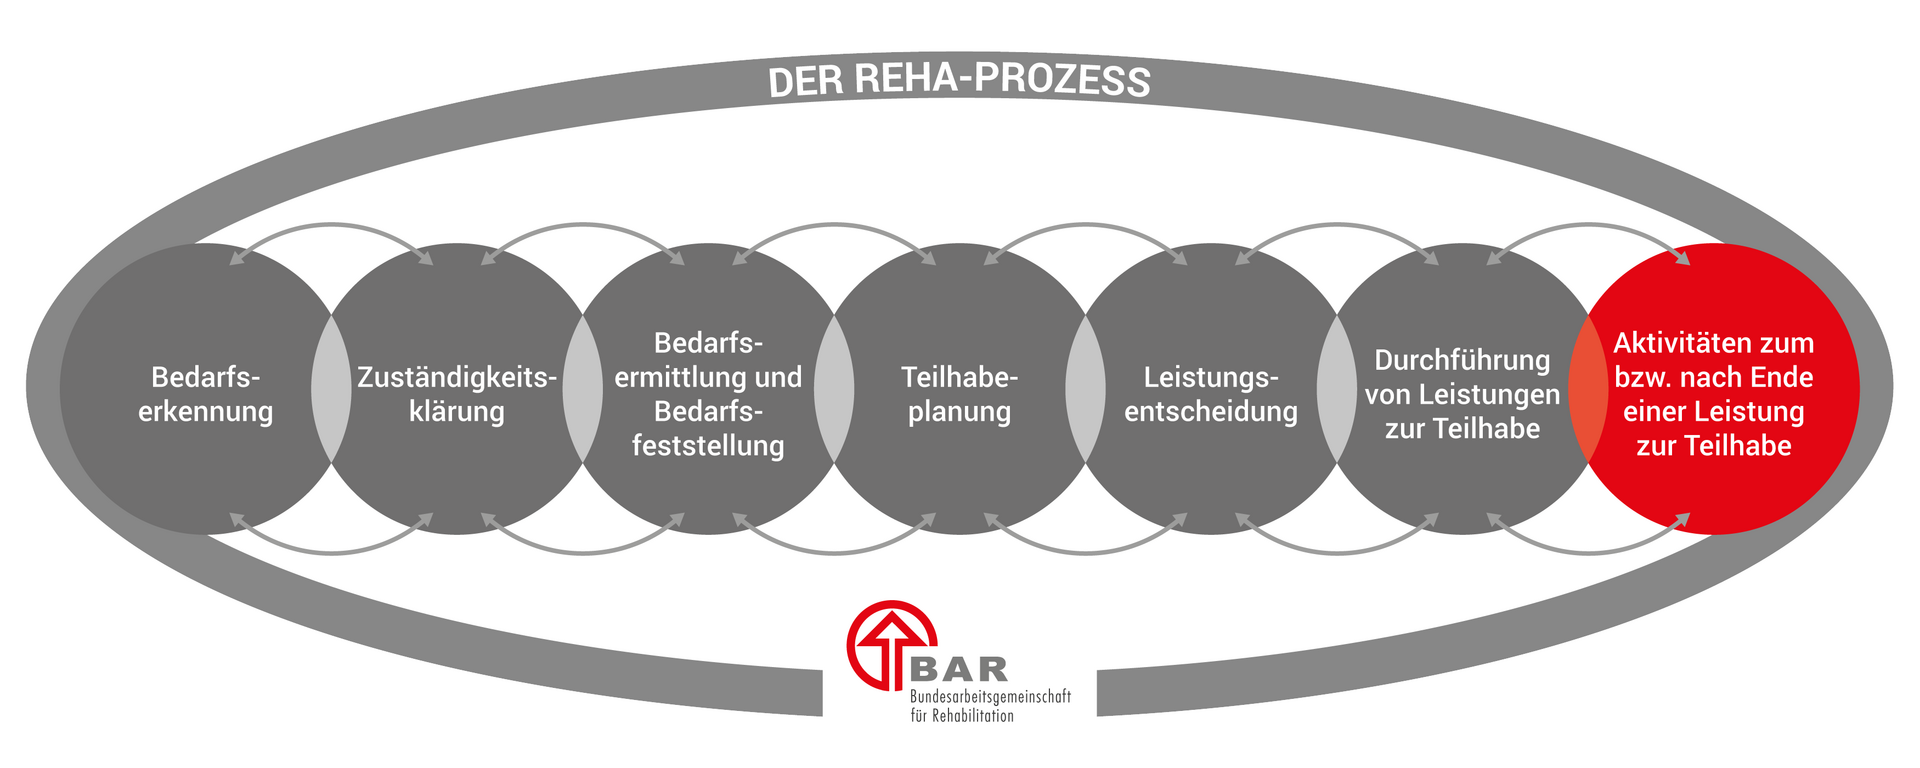 Die sieben Phasen des Reha-Prozesses, dargestellt in sich überlappenden Kreisen: Bedarfserkennung, Zuständigkeitsklärung, Bedarfsermittlung und Bedarfsfeststellung, Teilhabeplanung, Leistungsentscheidung, Durchführung von Leistungen zur Teilhabe und Aktivitäten zum bzw. nach Ende einer Leistung. Hervorgehoben ist die Phase der Aktivitäte am Ende einer Leistung zur Teilhabe. Die Überschrift lautet „Der Reha-Prozess“ und unten befindet sich das Logo der BAR.